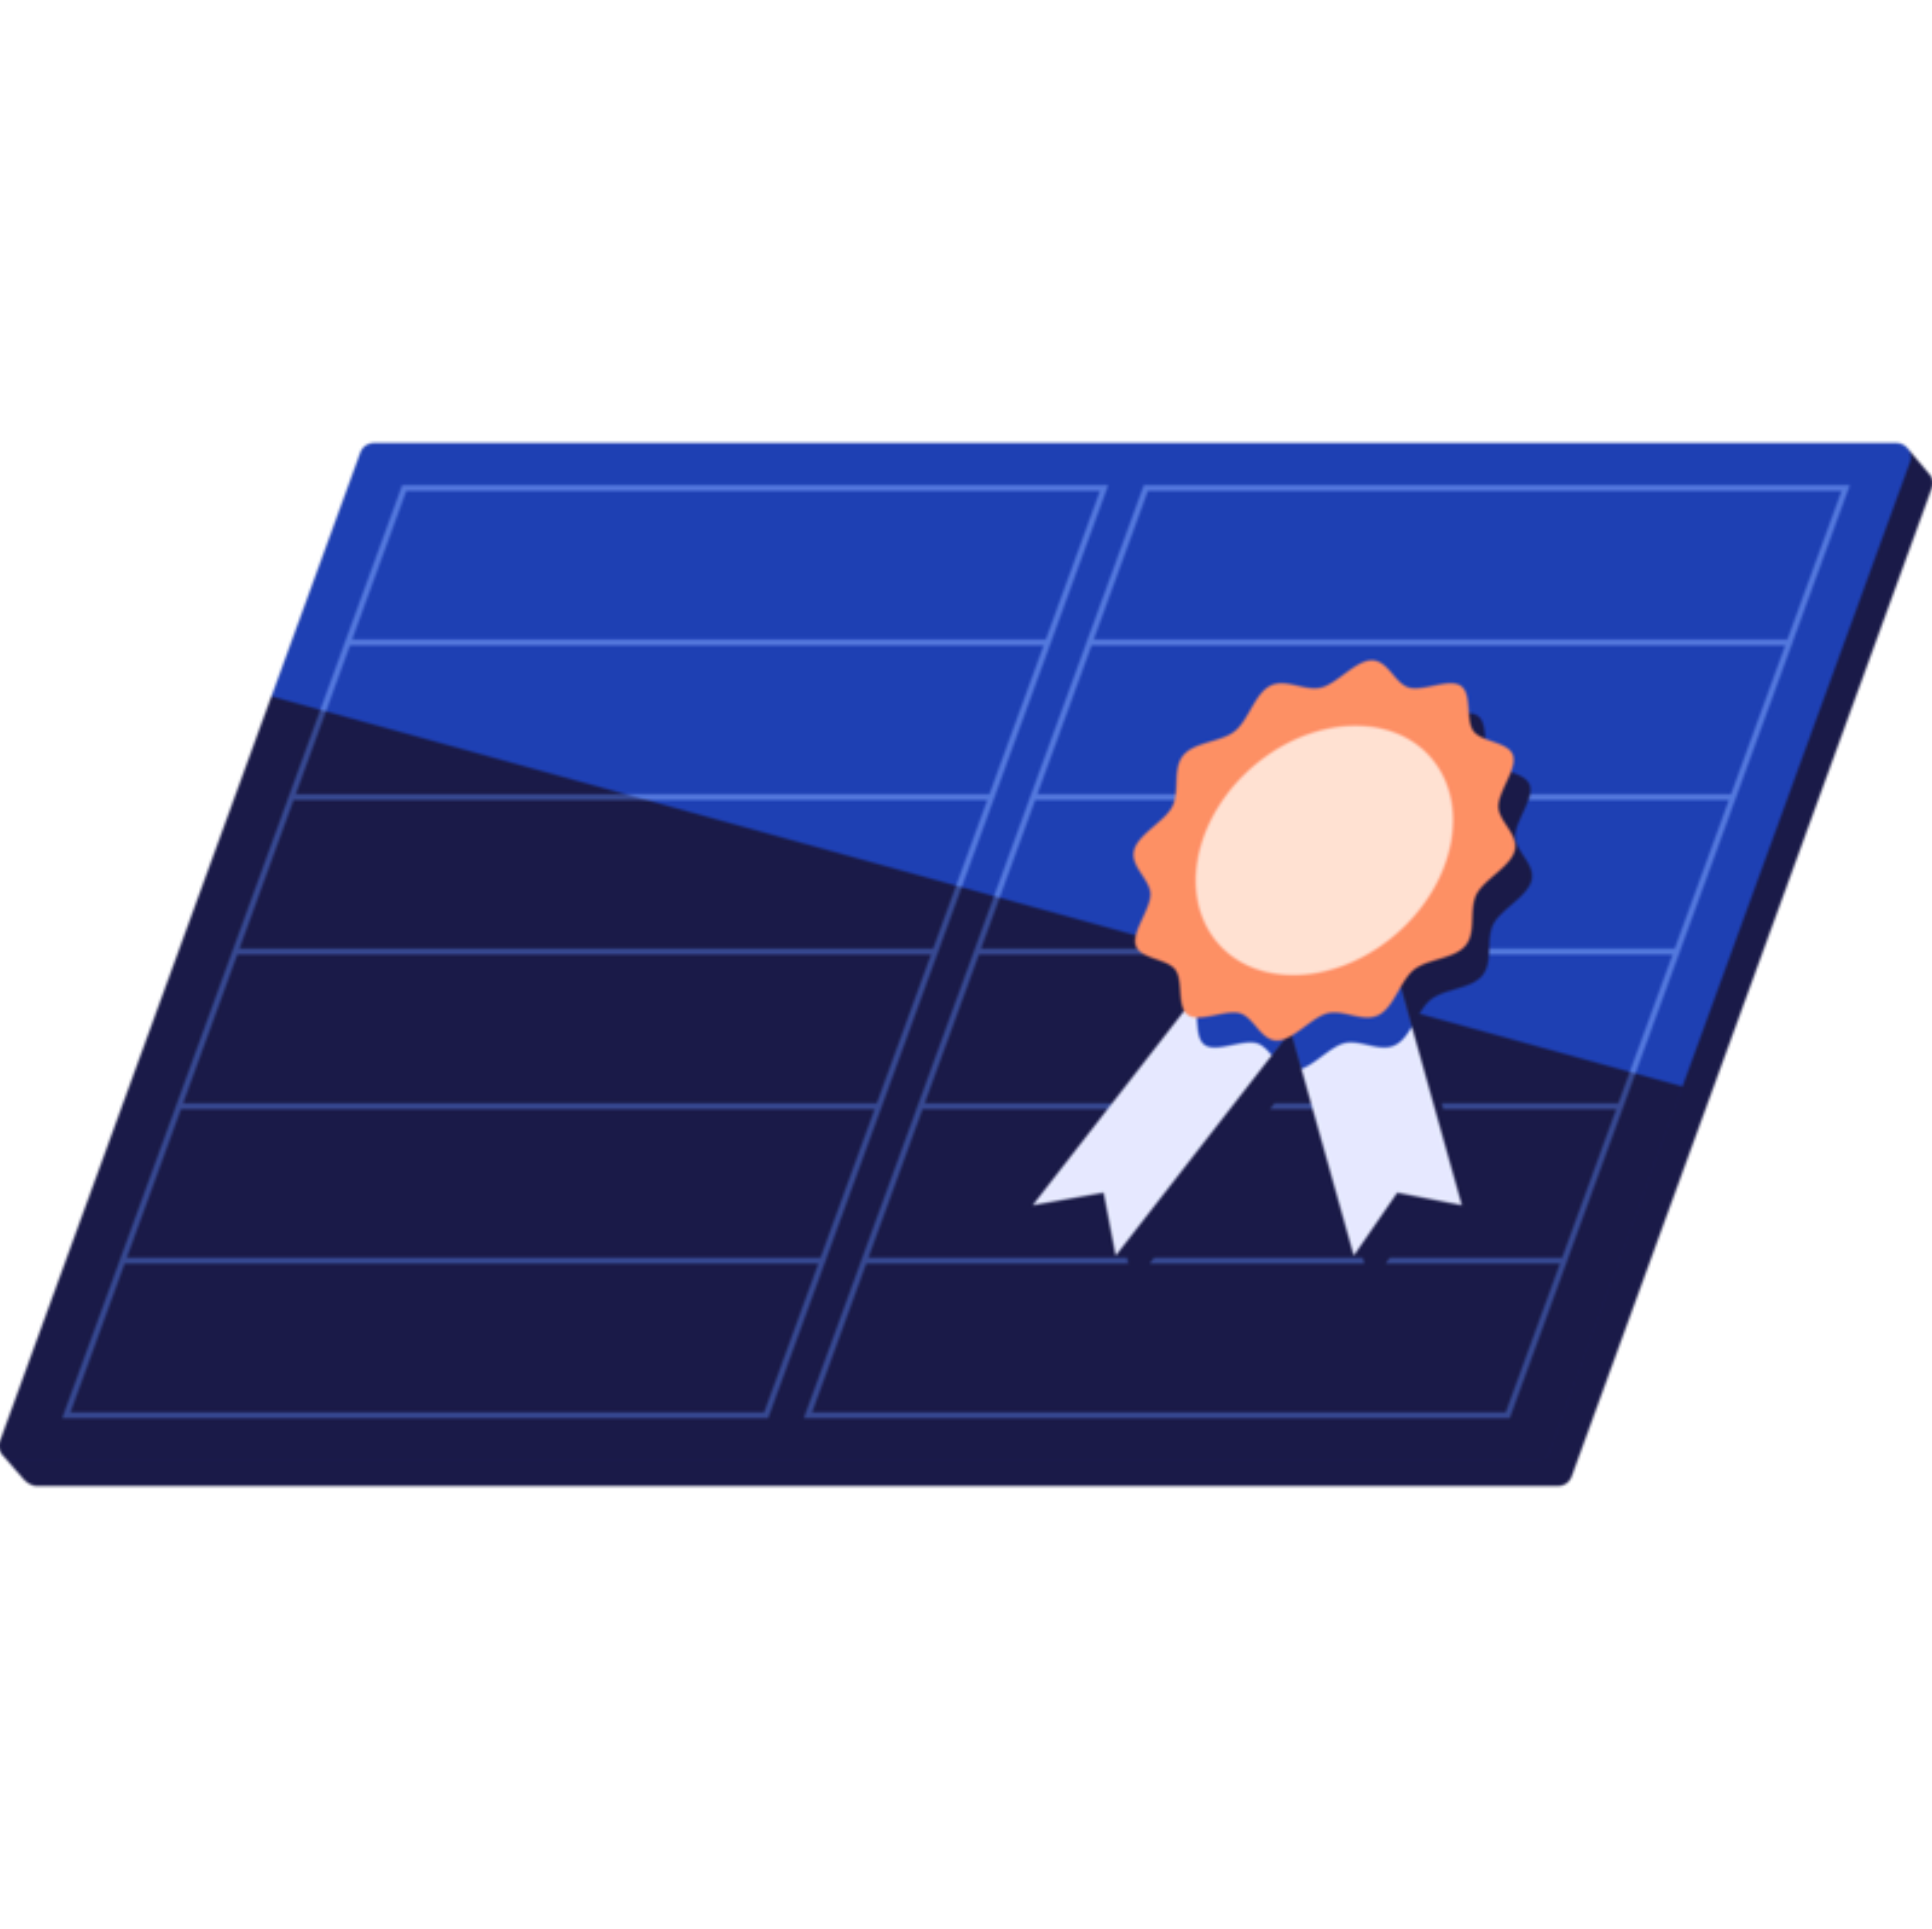  ilustração de painel solar